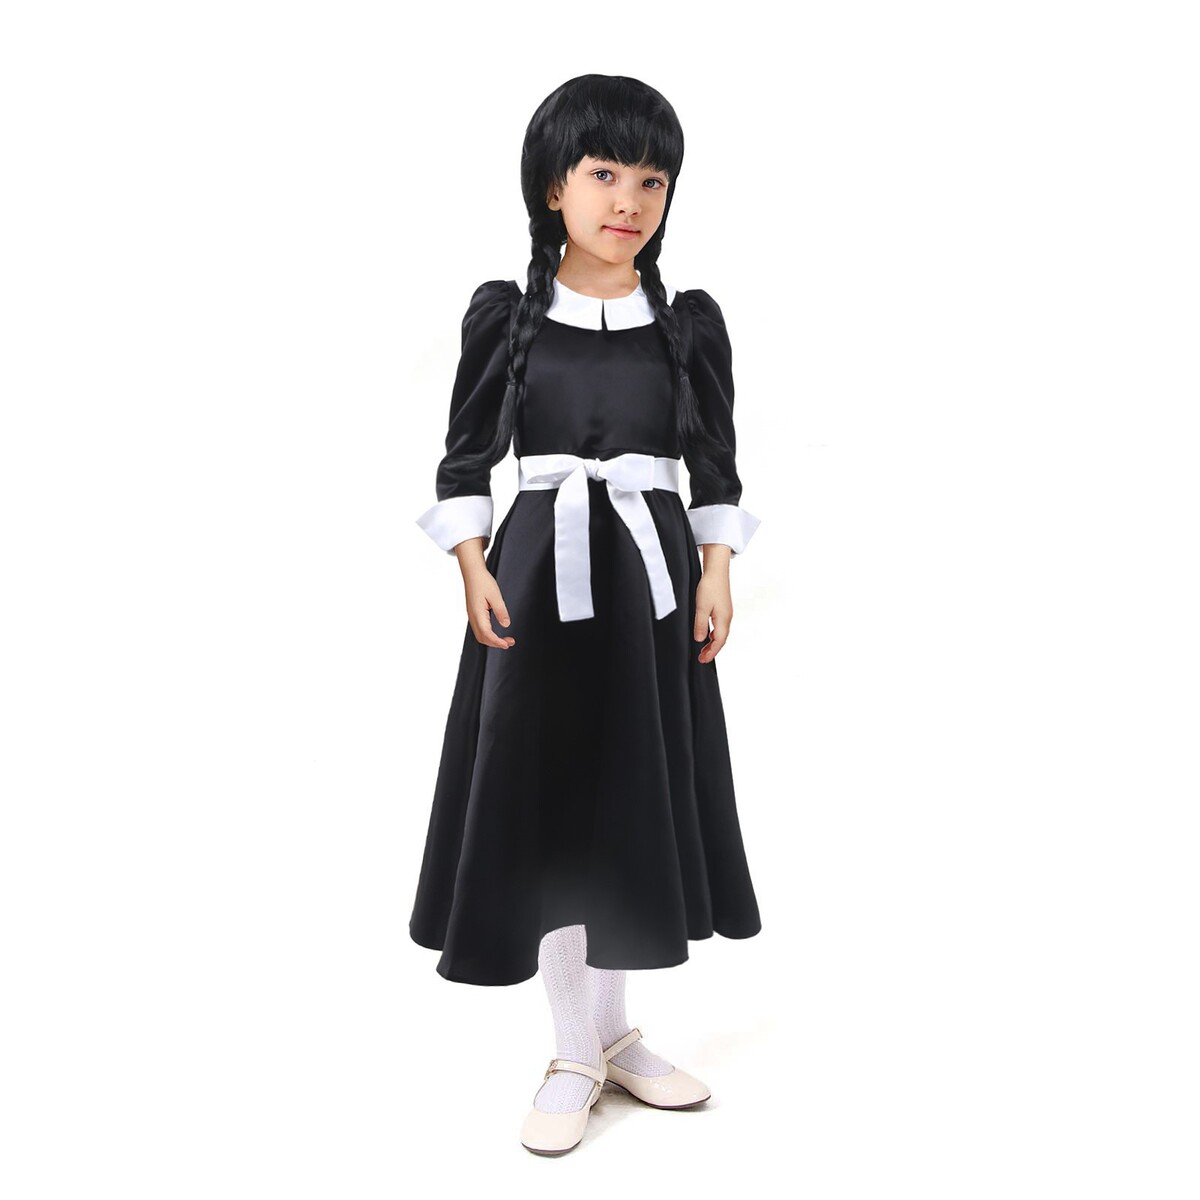 Карнавальное черное платье с белым воротником,атлас,п/э,р-р44,р164 атлас русалок